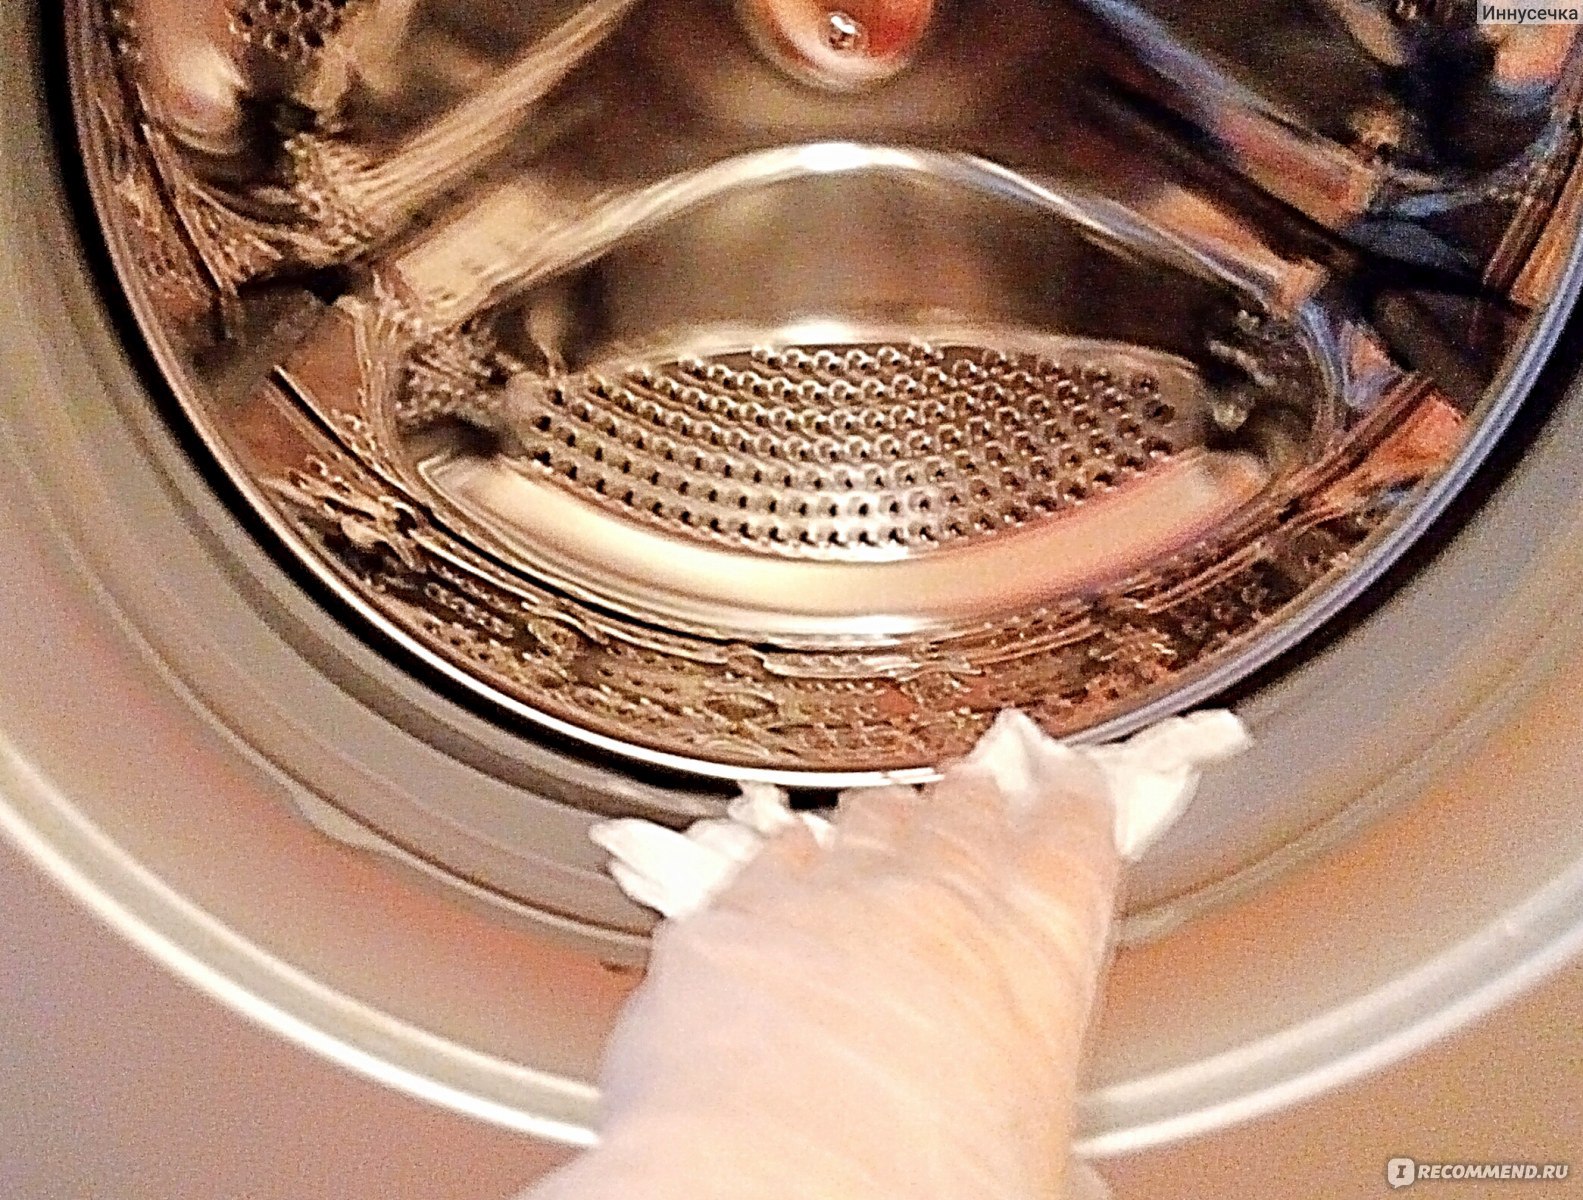 Почистить стиральную машину от запаха барабан. Барабан машинки. Чистка стиральной машины. Запах из стиральной машины средства. Пахнет из барабана стиральной машины.